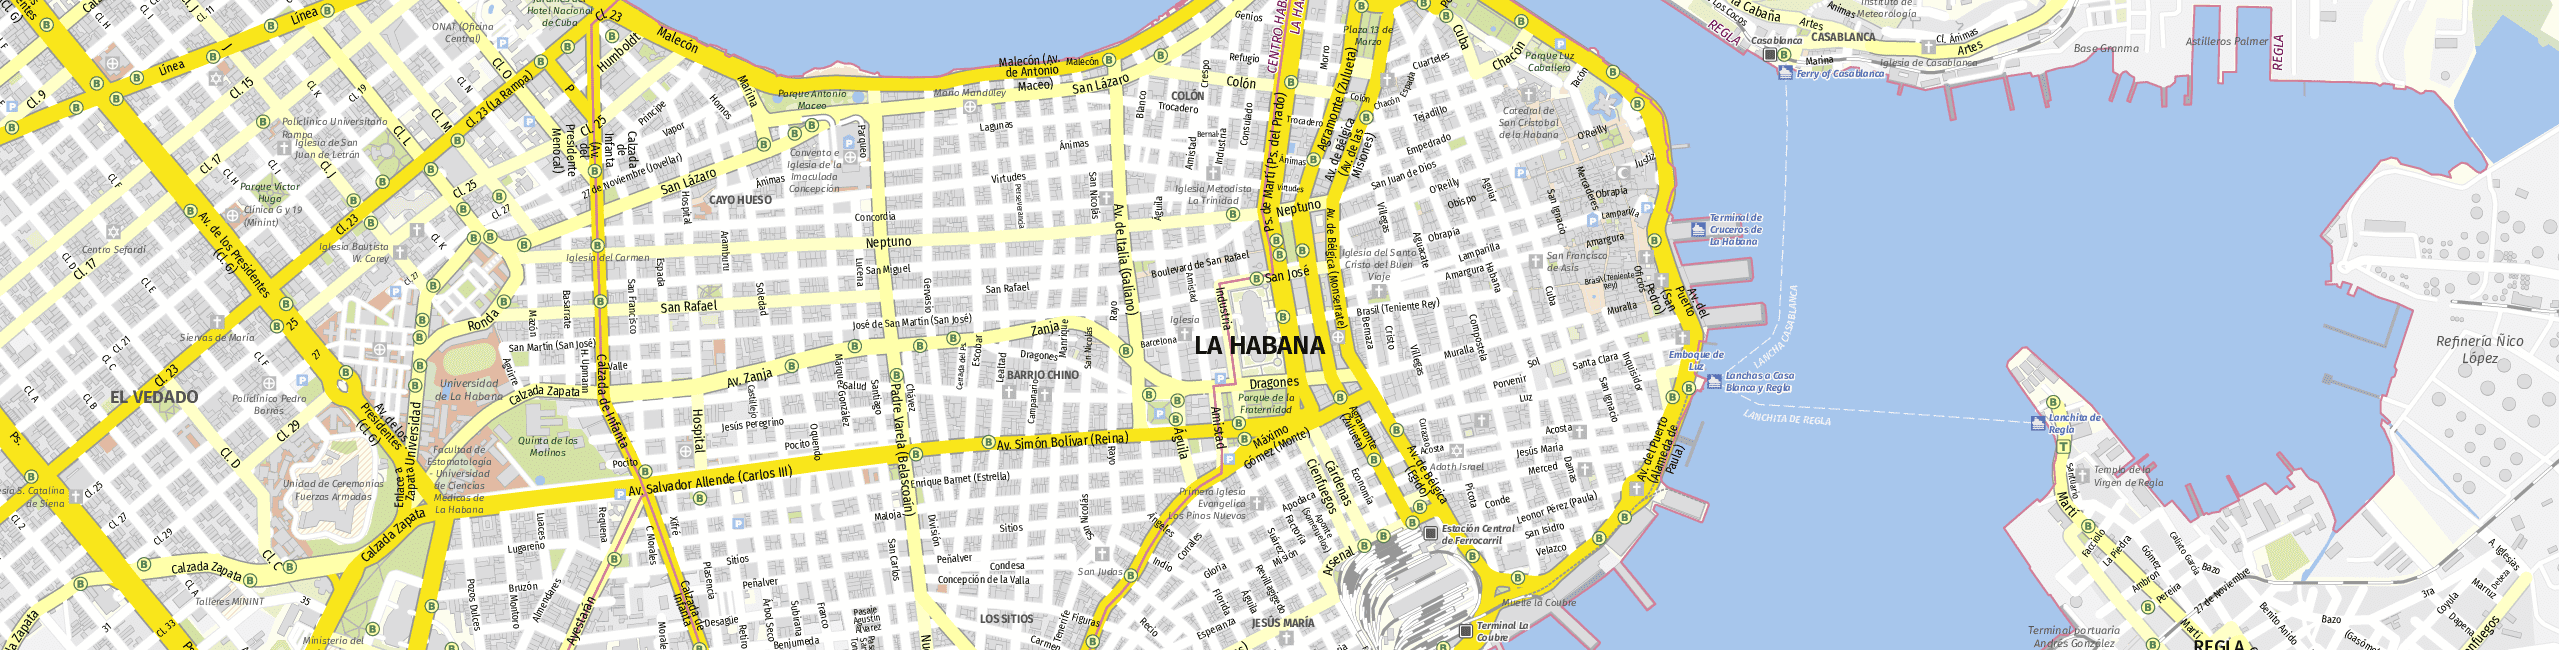 Stadtplan Ciudad de La Habana zum Downloaden.